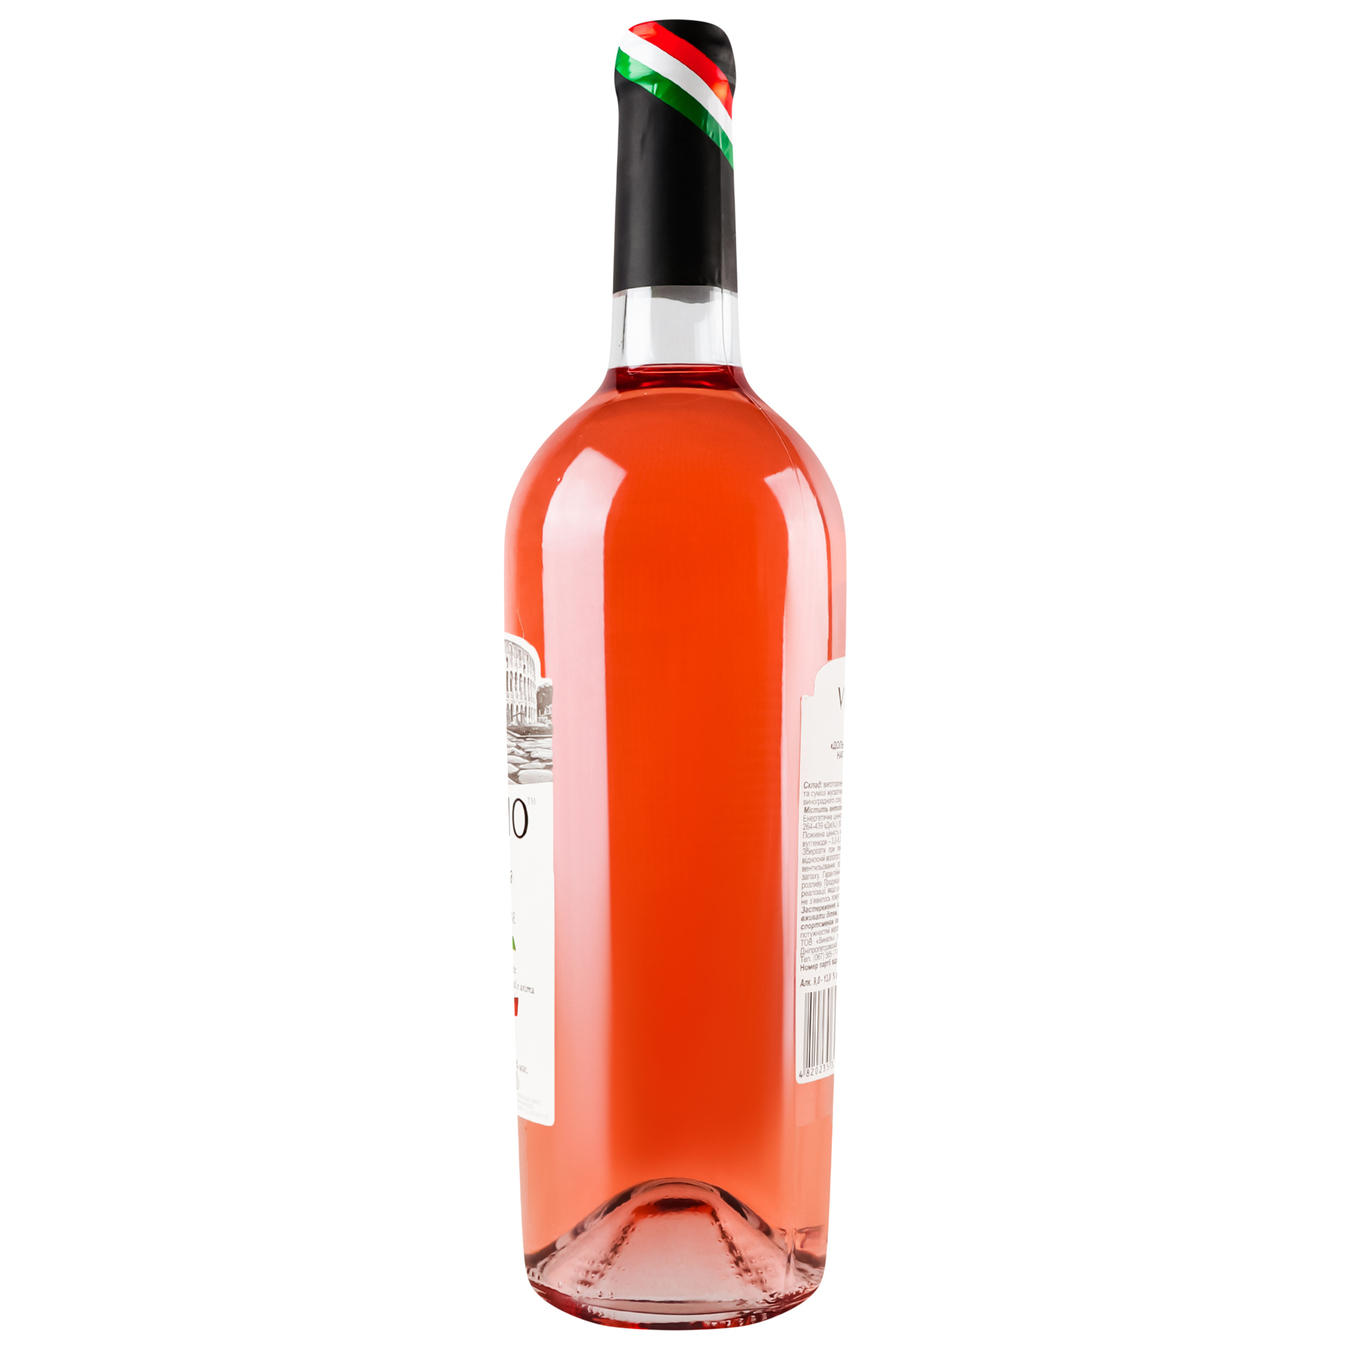 Viaggioi Dolchezza pink semi-sweet wine 9.5-14% 0.75 l 2